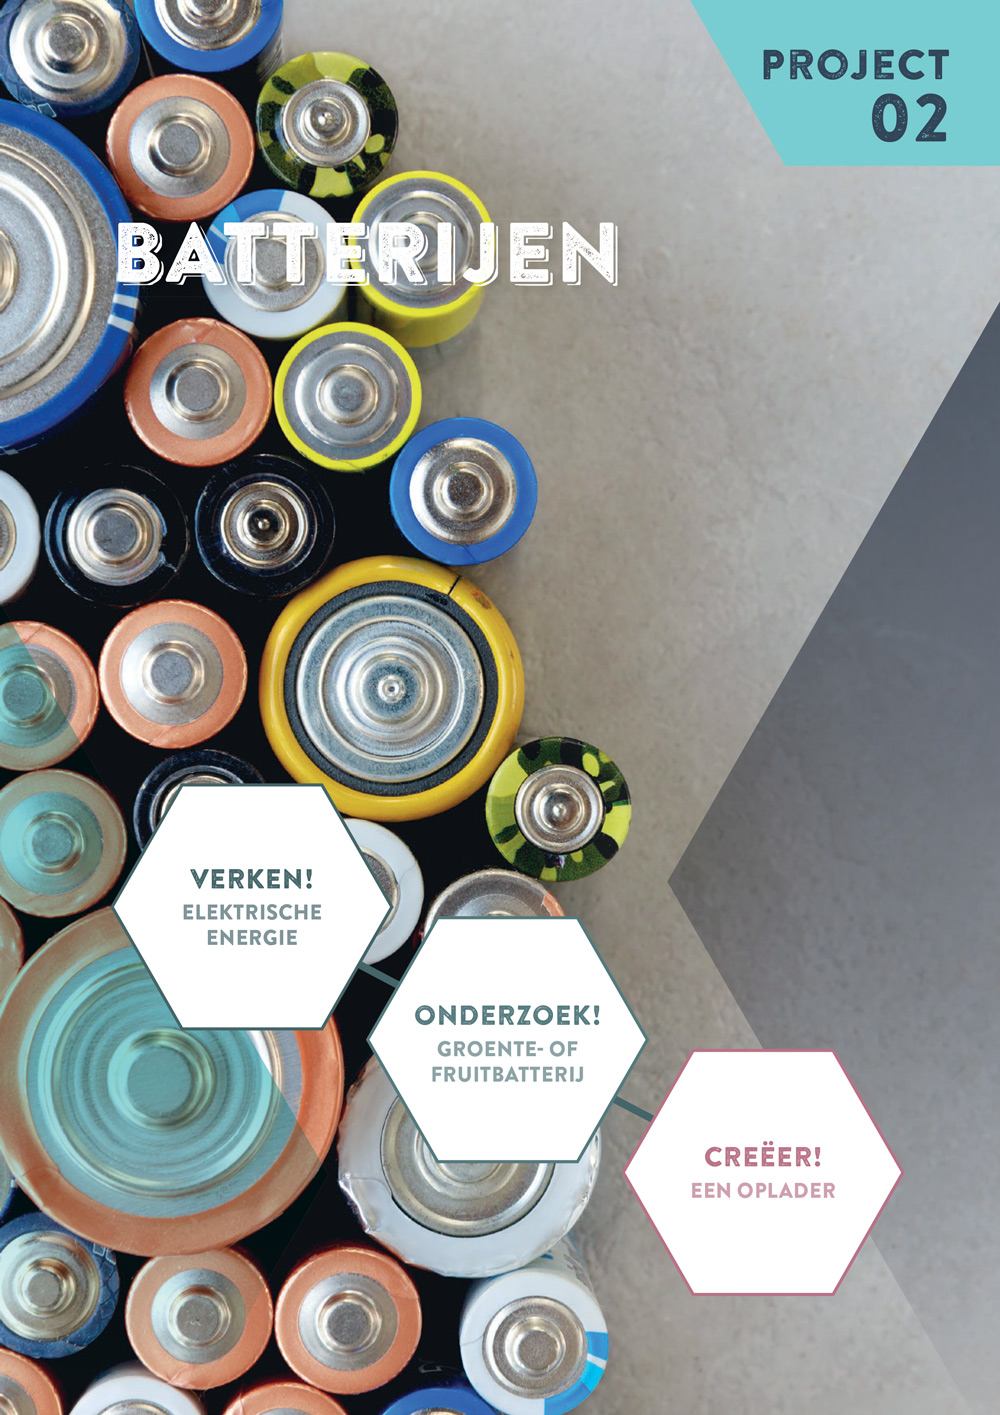 STEM-project Batterijen bij WONDER voor de basisoptie wetenschappen in jaar 2